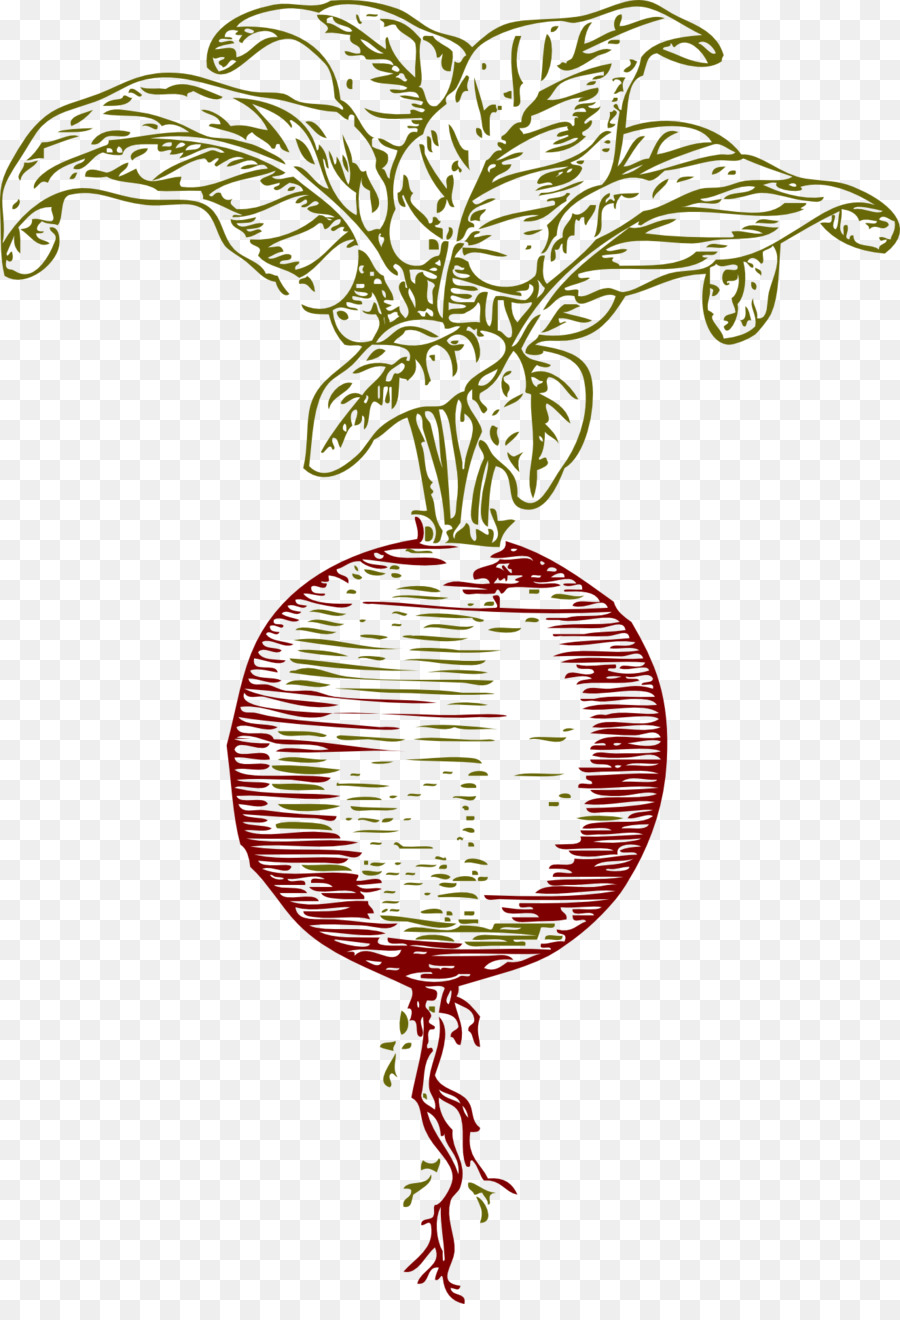 Granatapfel-Saft rote-bete-Rüben-Gemüse - Saft